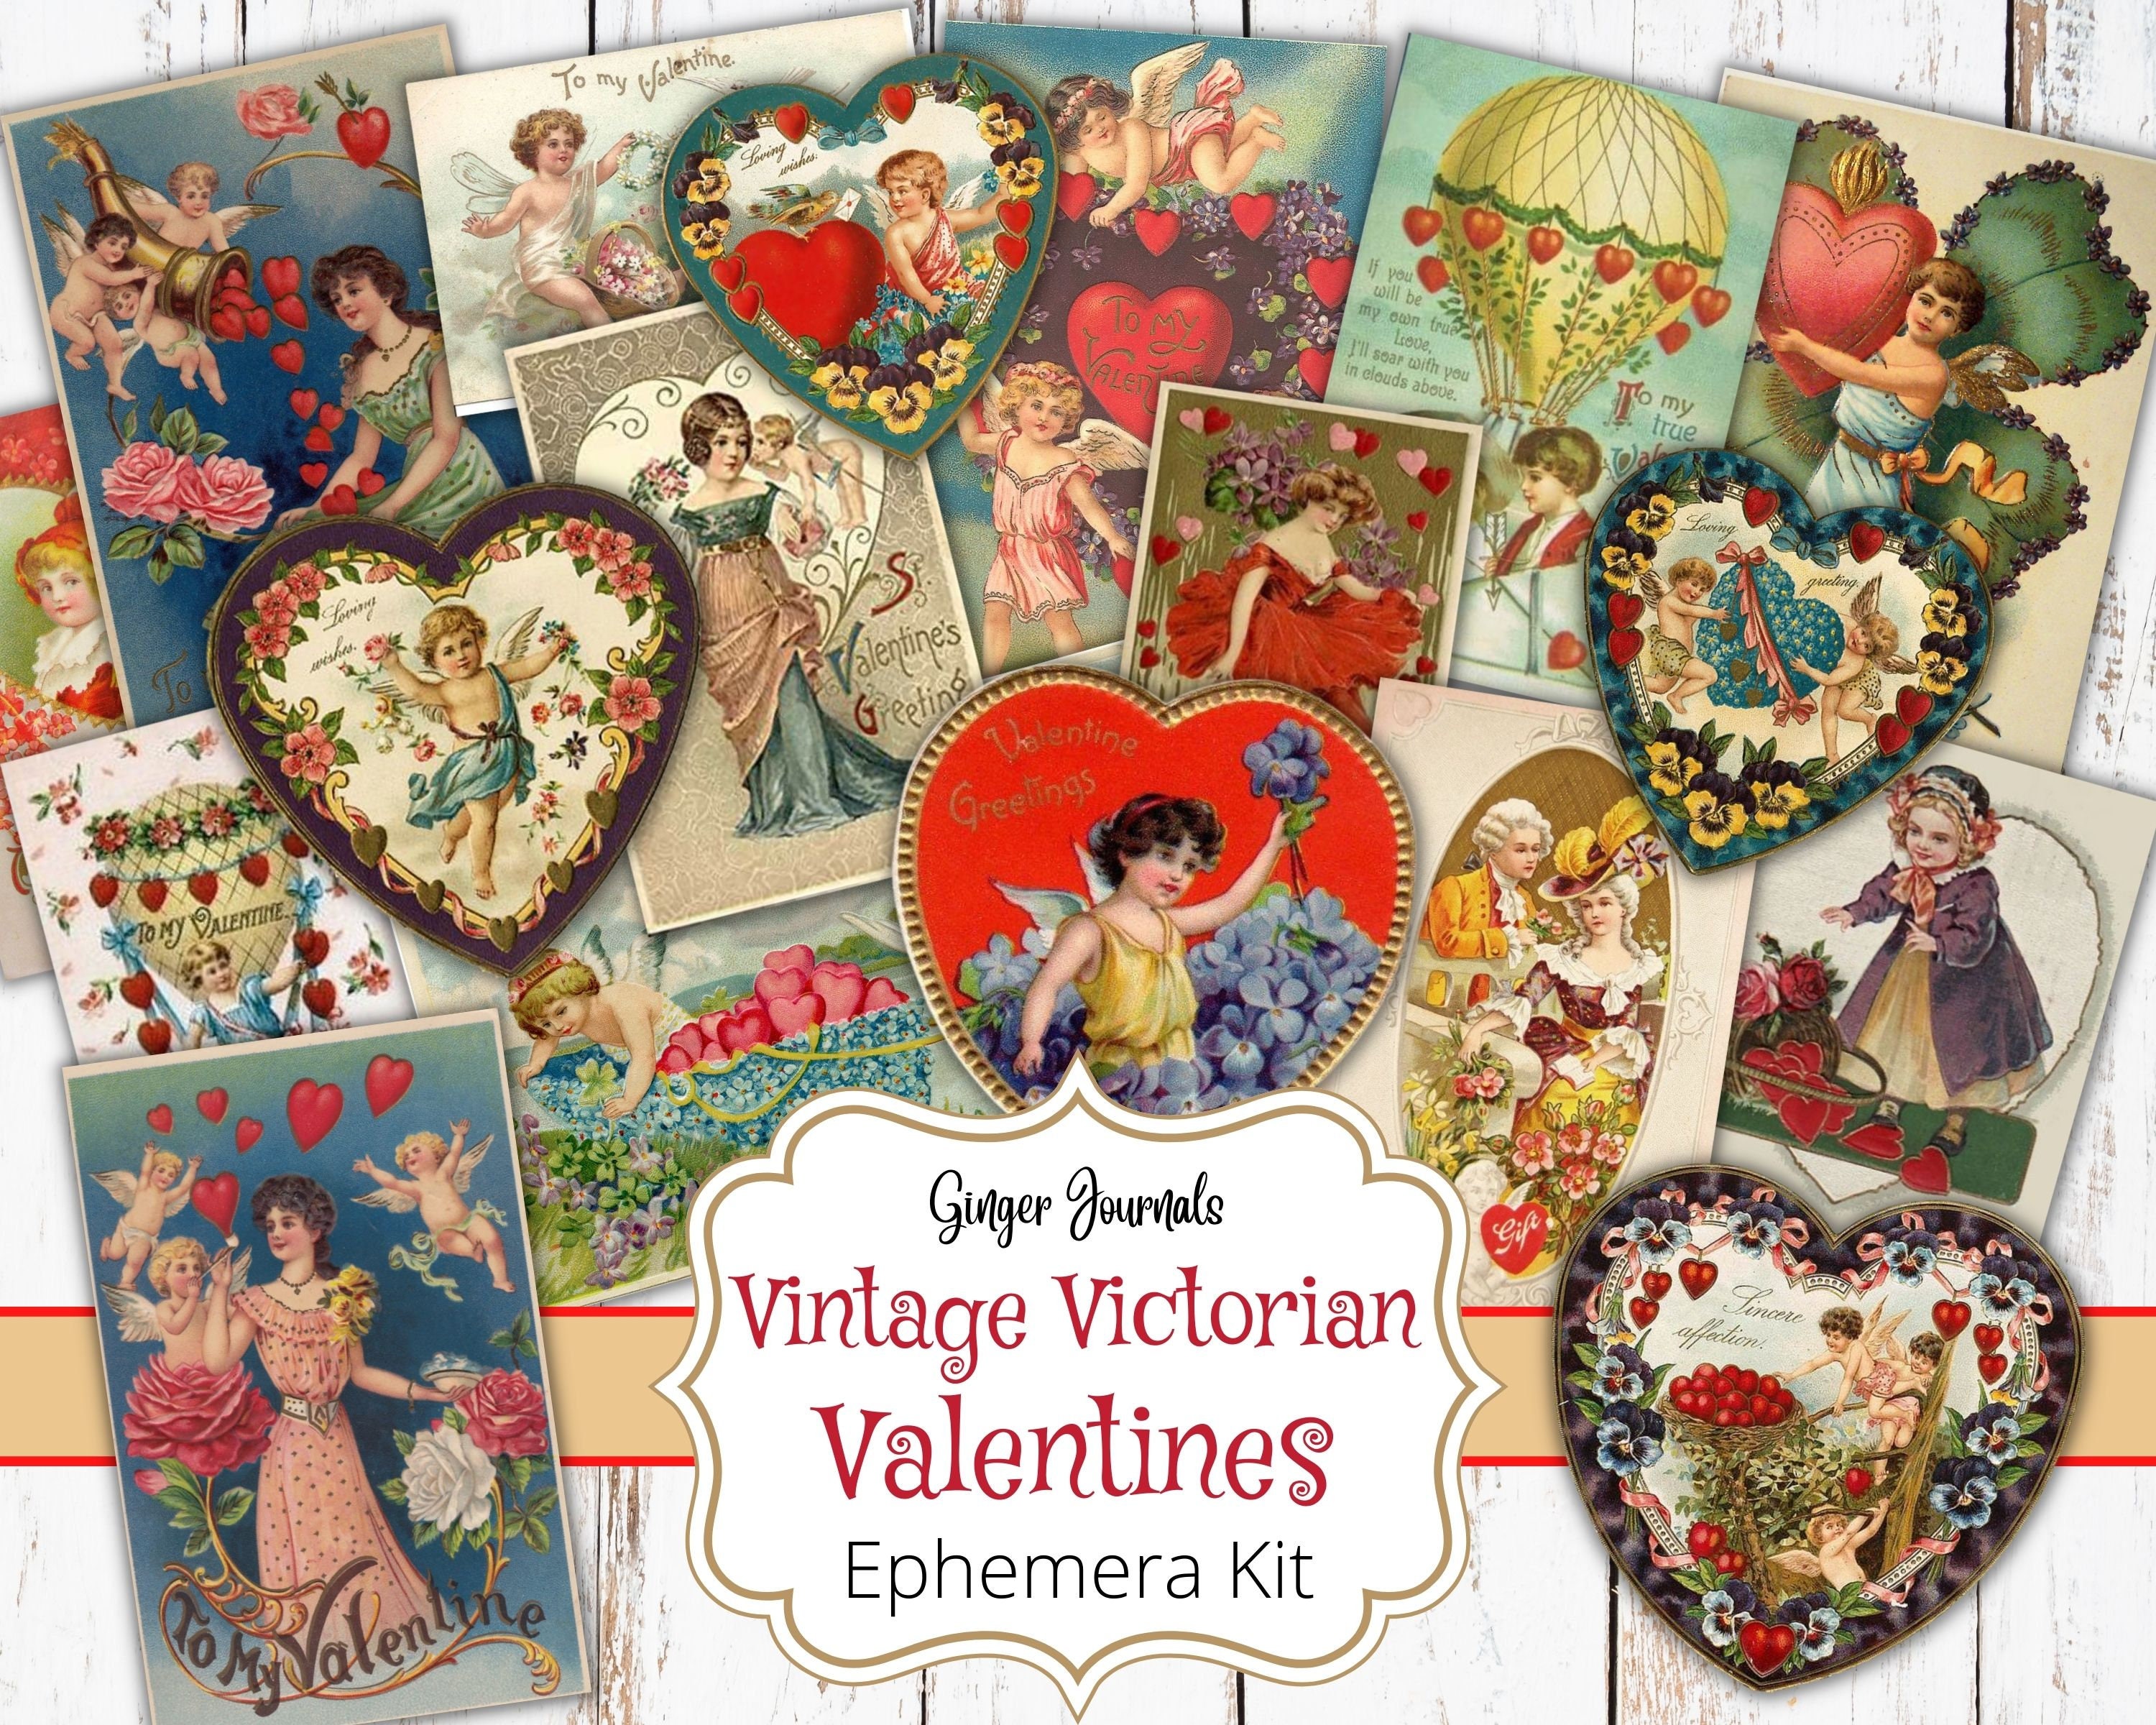 Valentine Stickers, Vintage Valentine Printable Stickers VINTAGE Stickers  Digital Collage, Digital Download Collage Sheet 2682 